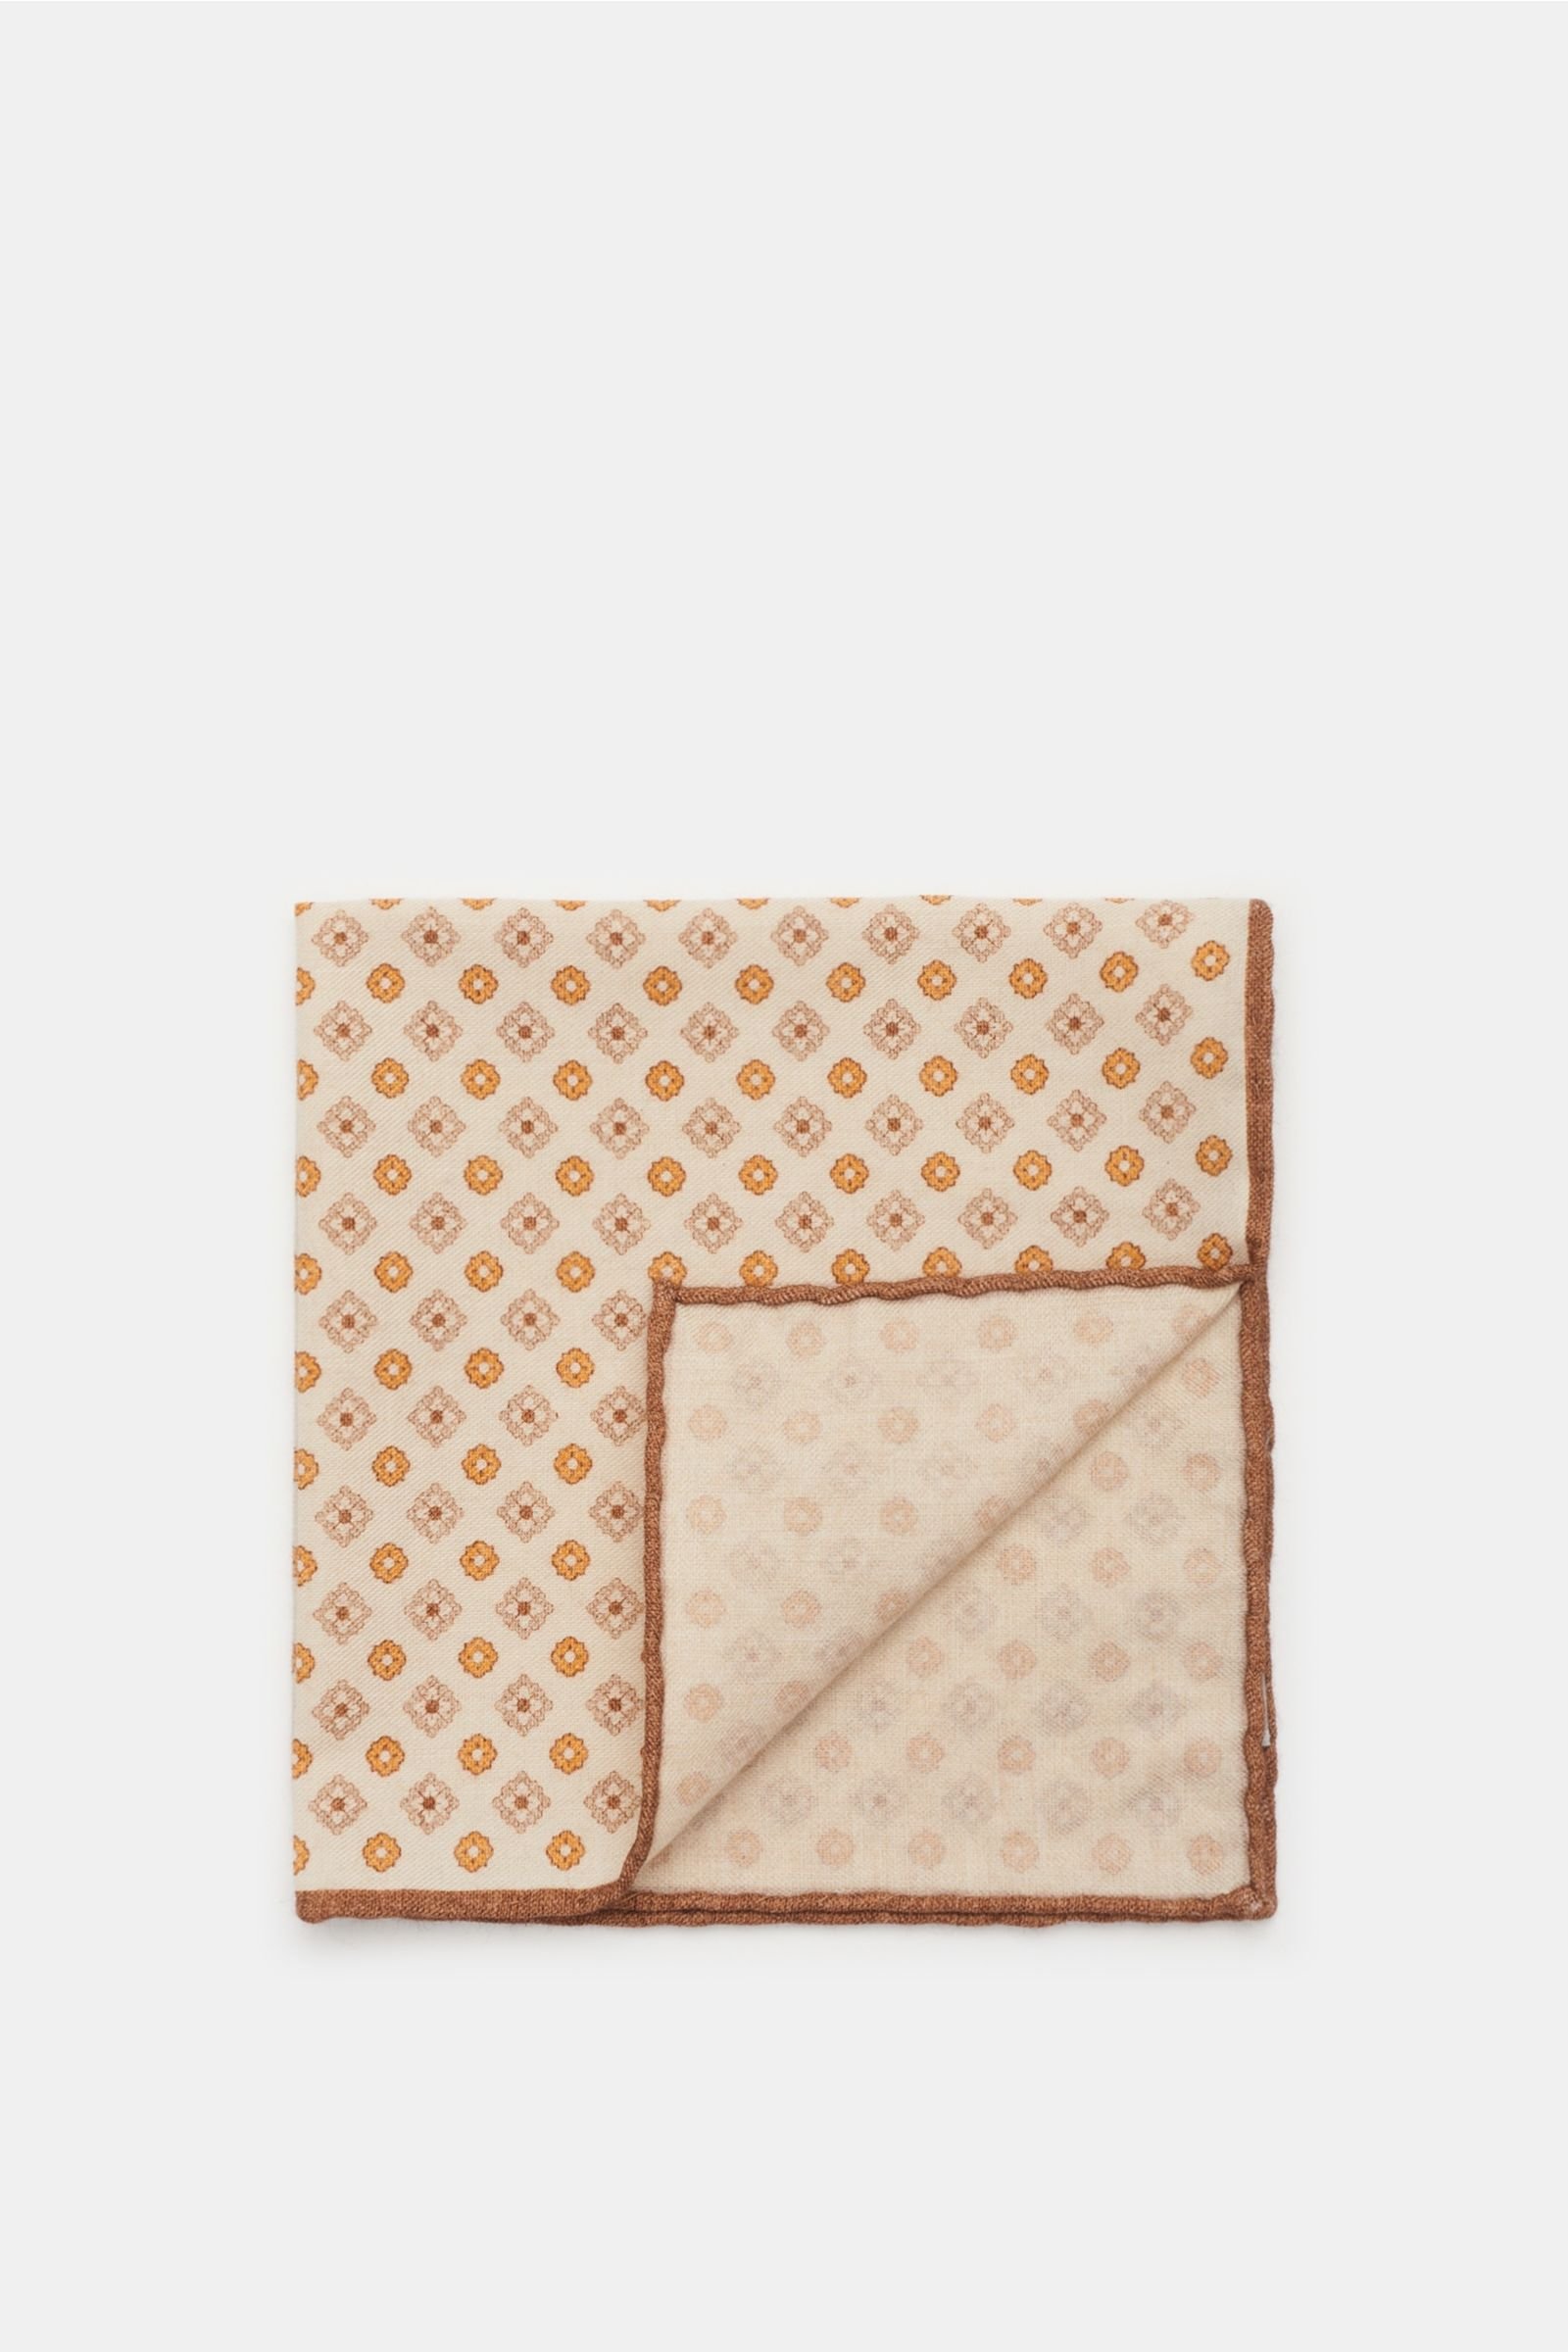 Pocket square beige/light brown patterned